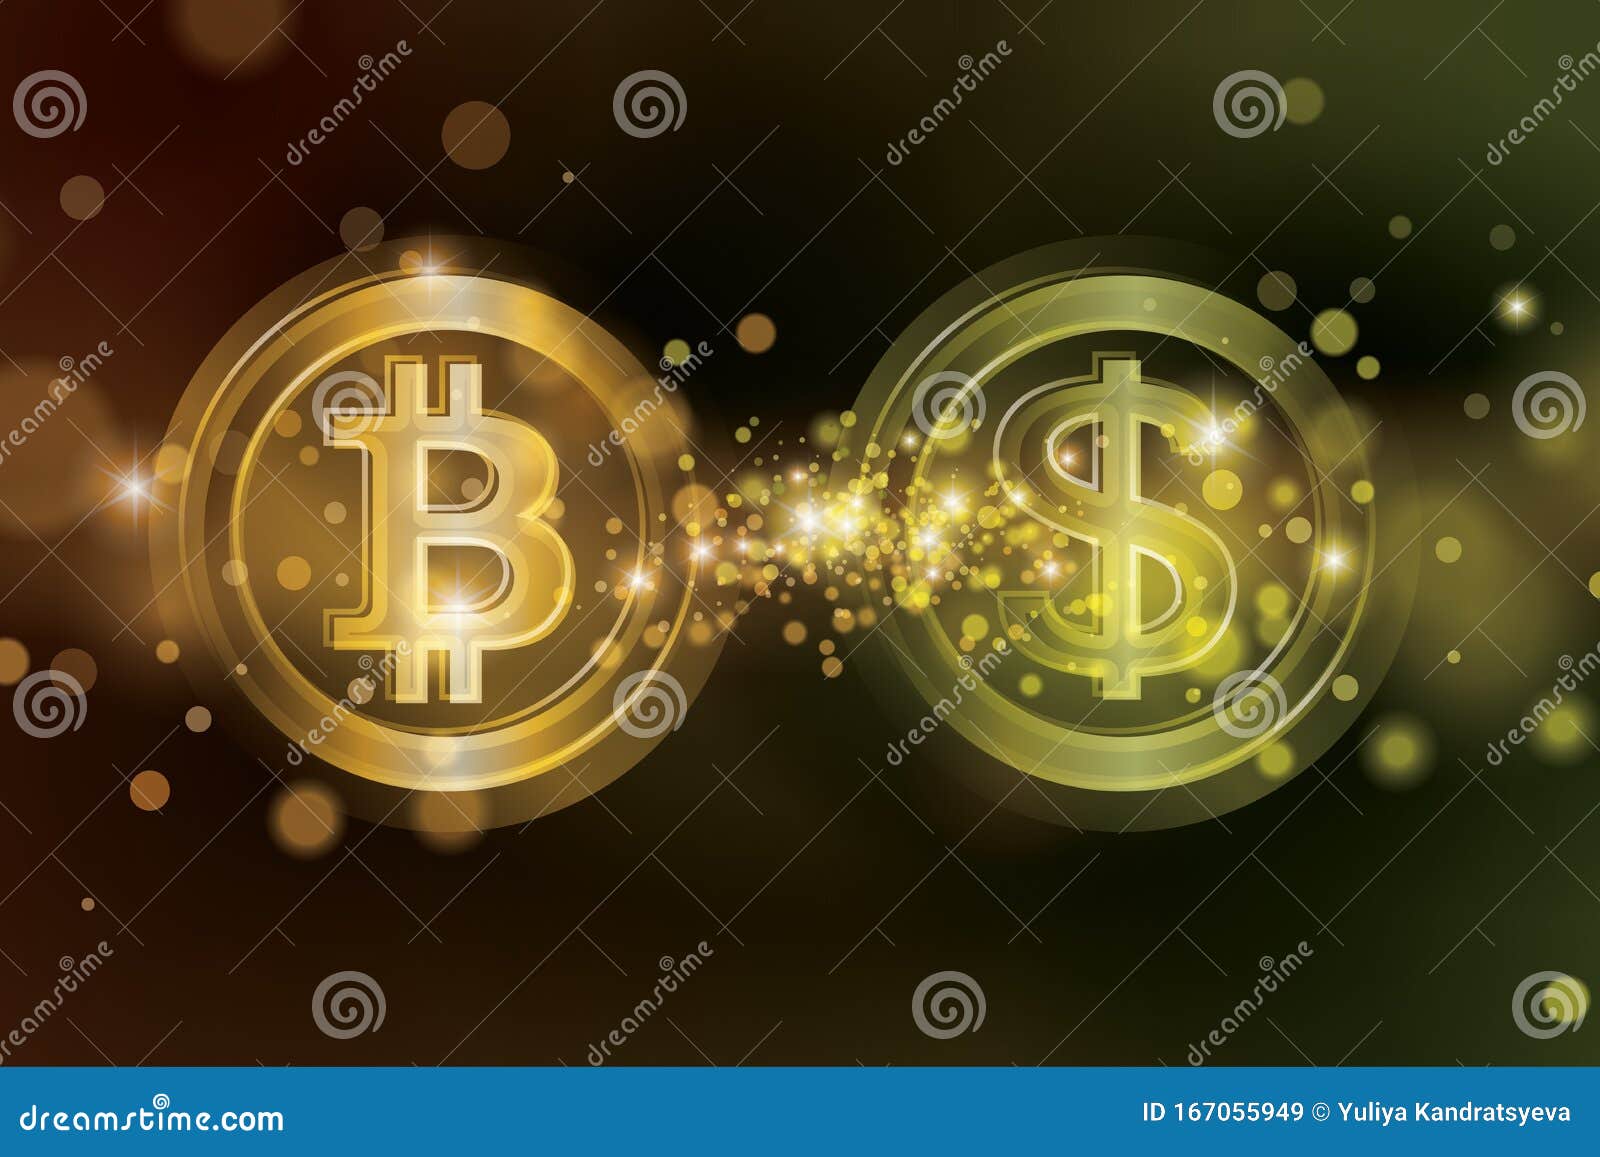 bitcoin cryptocurrency coinmarketcap